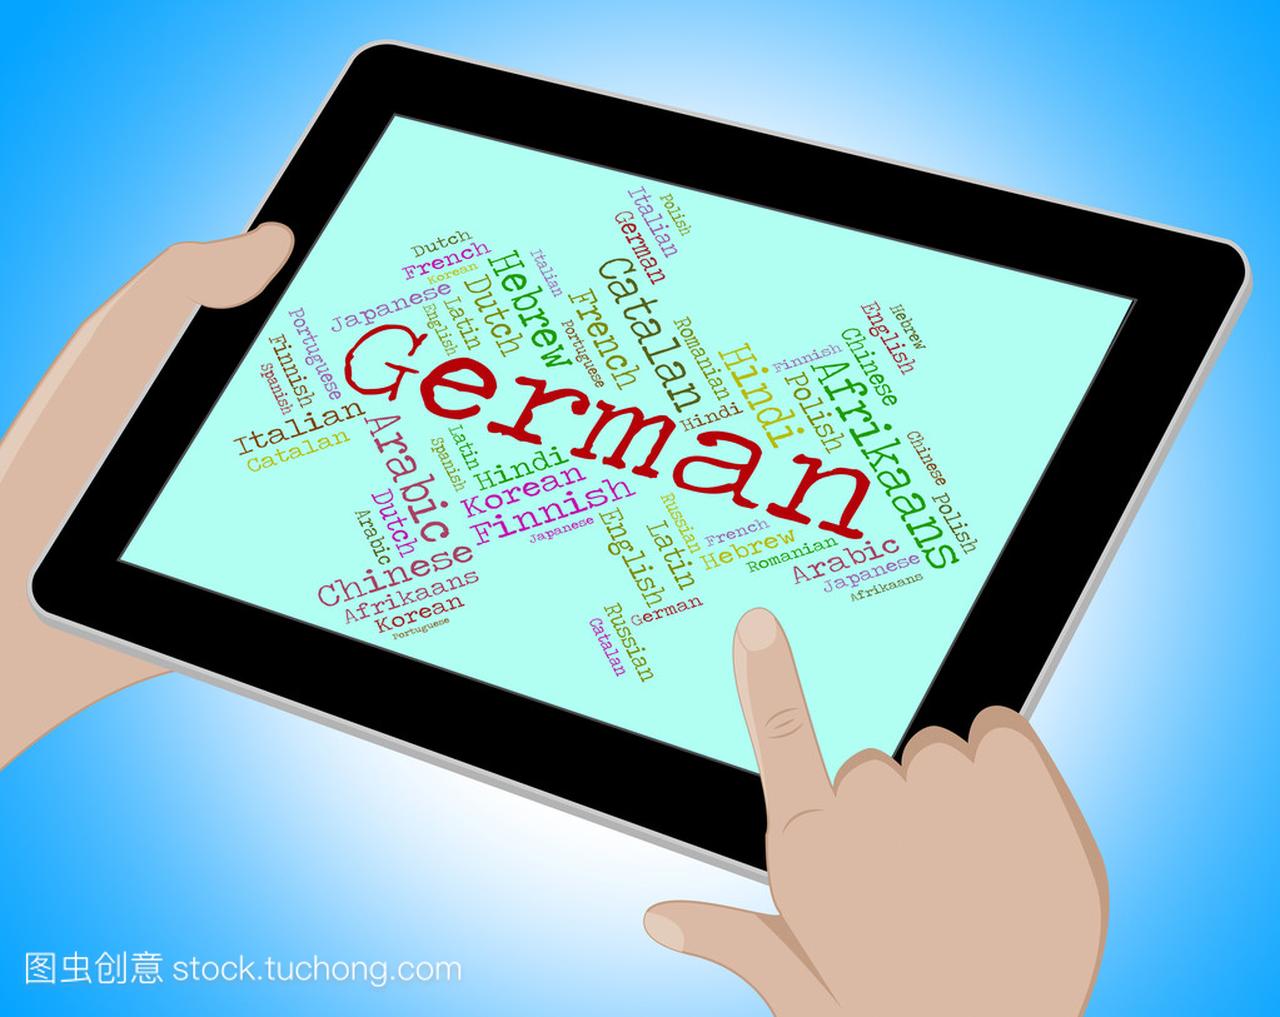 德国语言意味着 Wordcloud 翻译和词汇